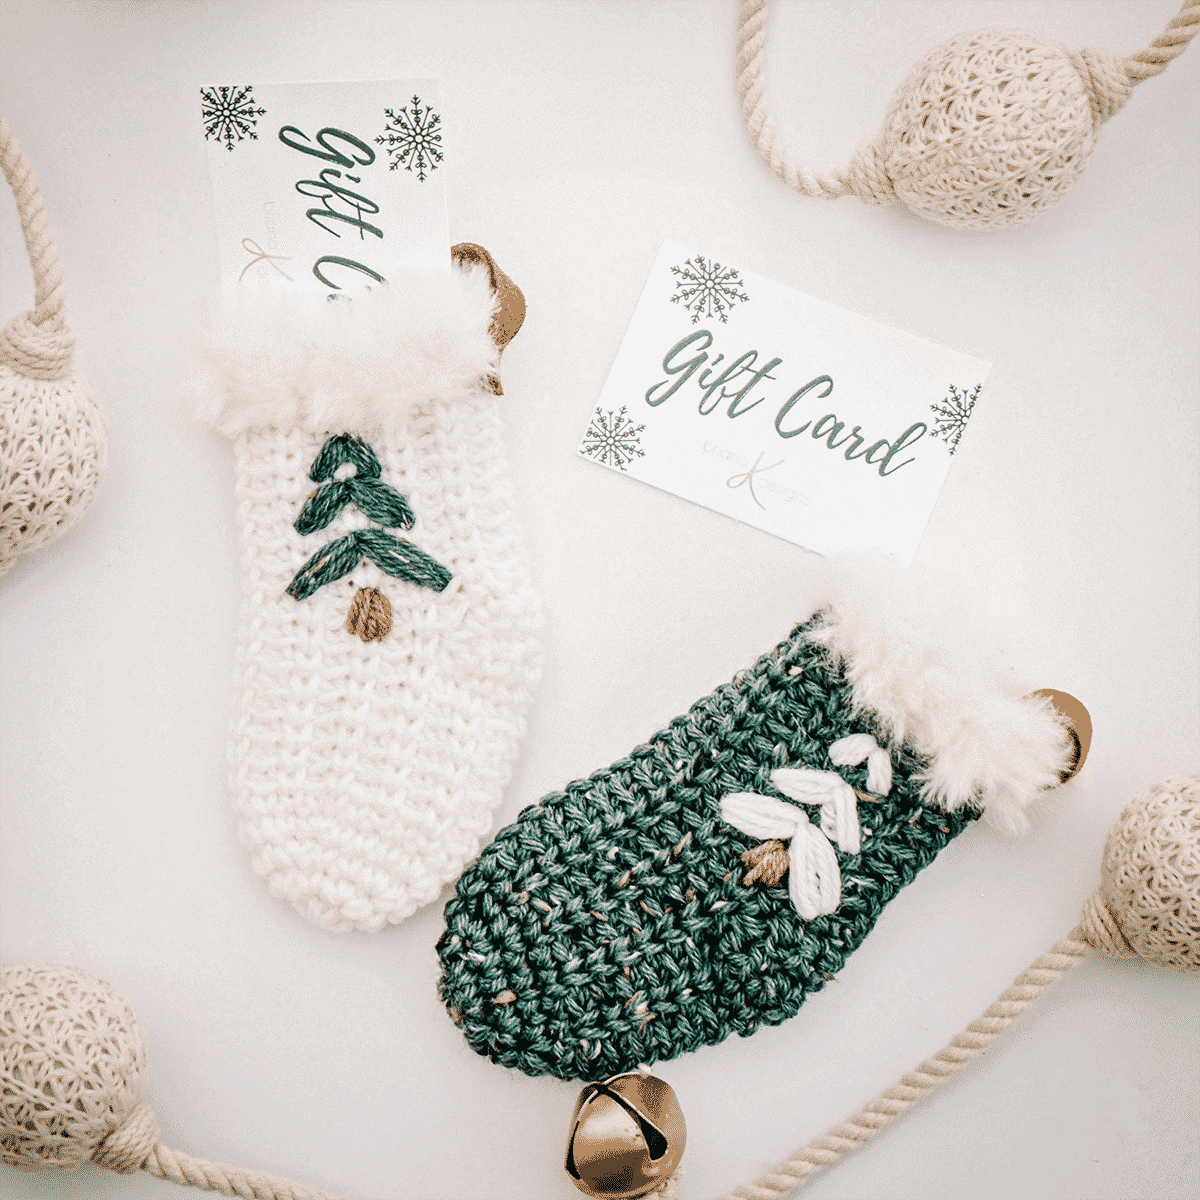 Crochet DIY Gift Card Holder + Stocking For Christmas